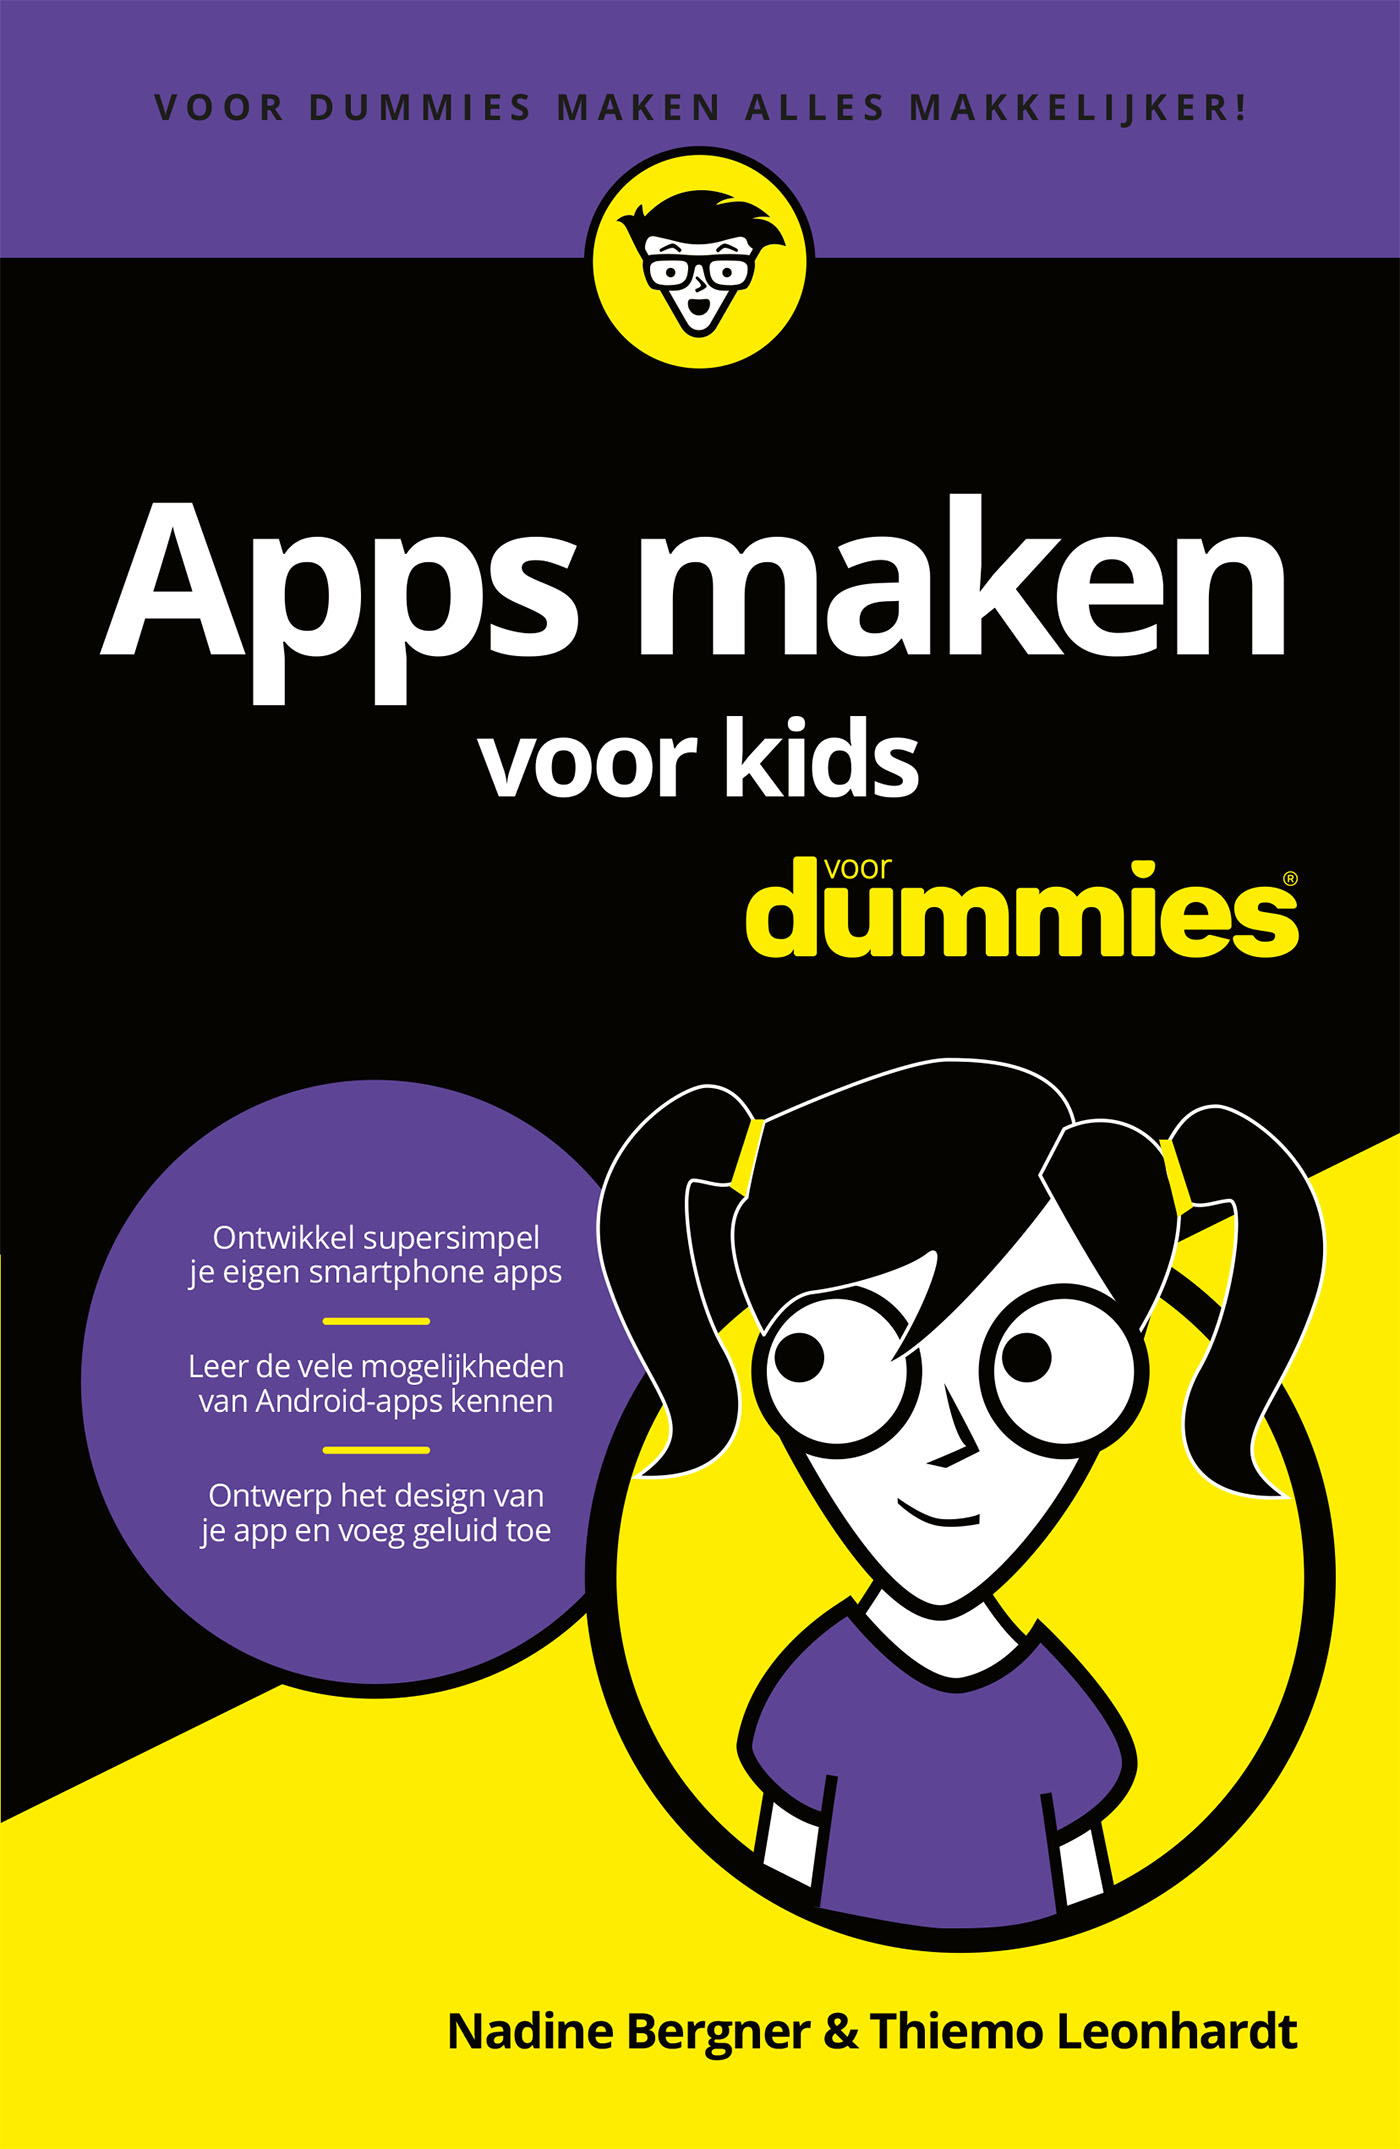 Apps maken voor kids voor Dummies (Ebook)